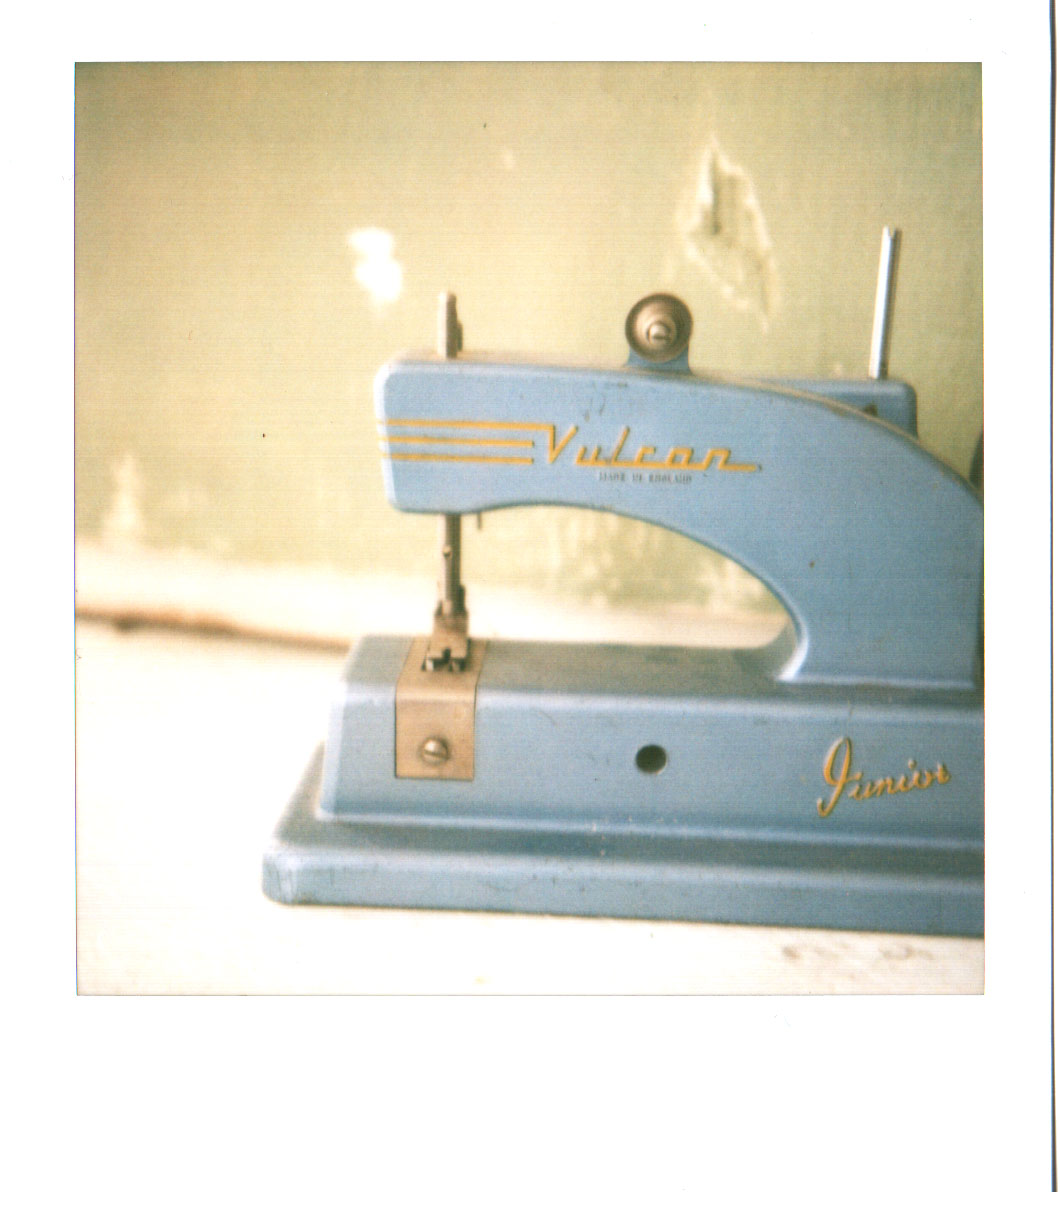 polaroid vulcan sewing